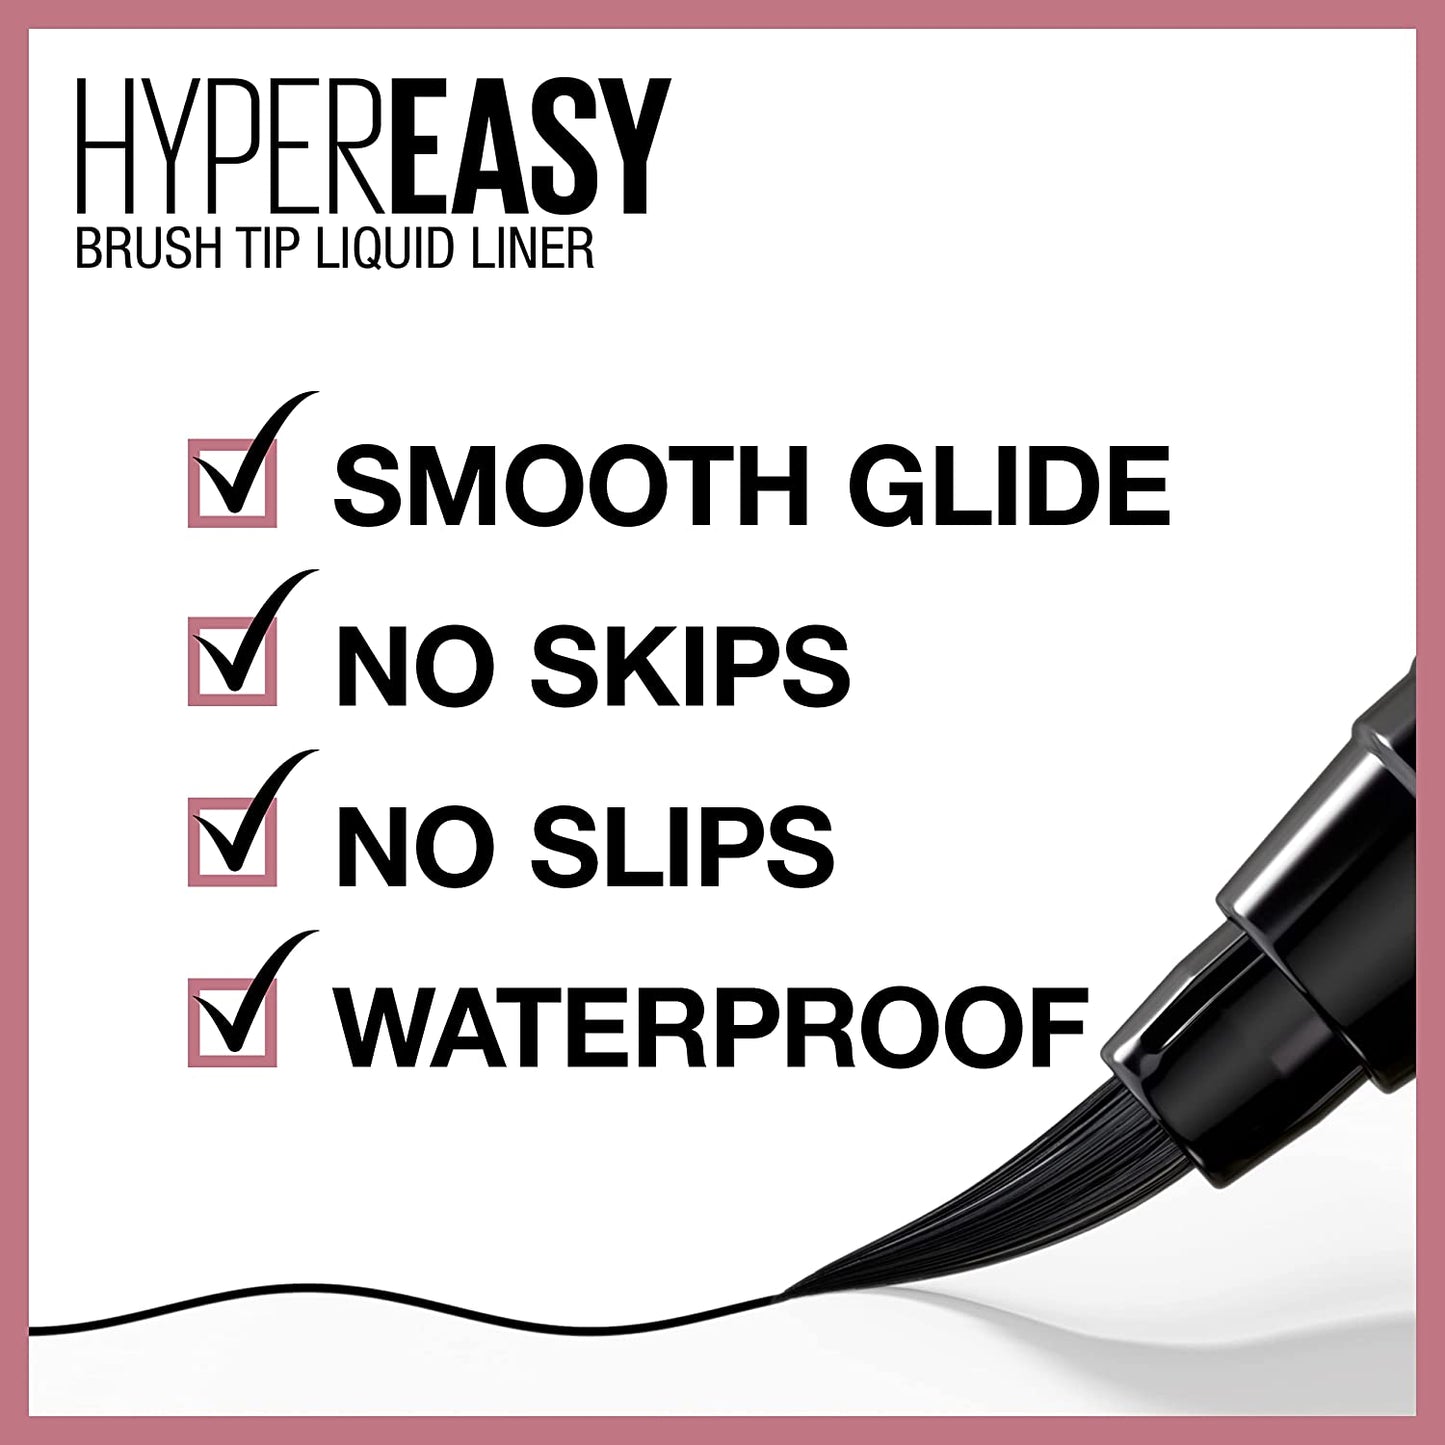 Lash Sensational Sky High Washable Mascara + Hyper Easy Liquid Eyeliner Makeup Bundle, Includes 1 Mascara in Blackest Black and 1 Eyeliner in Pitch Black